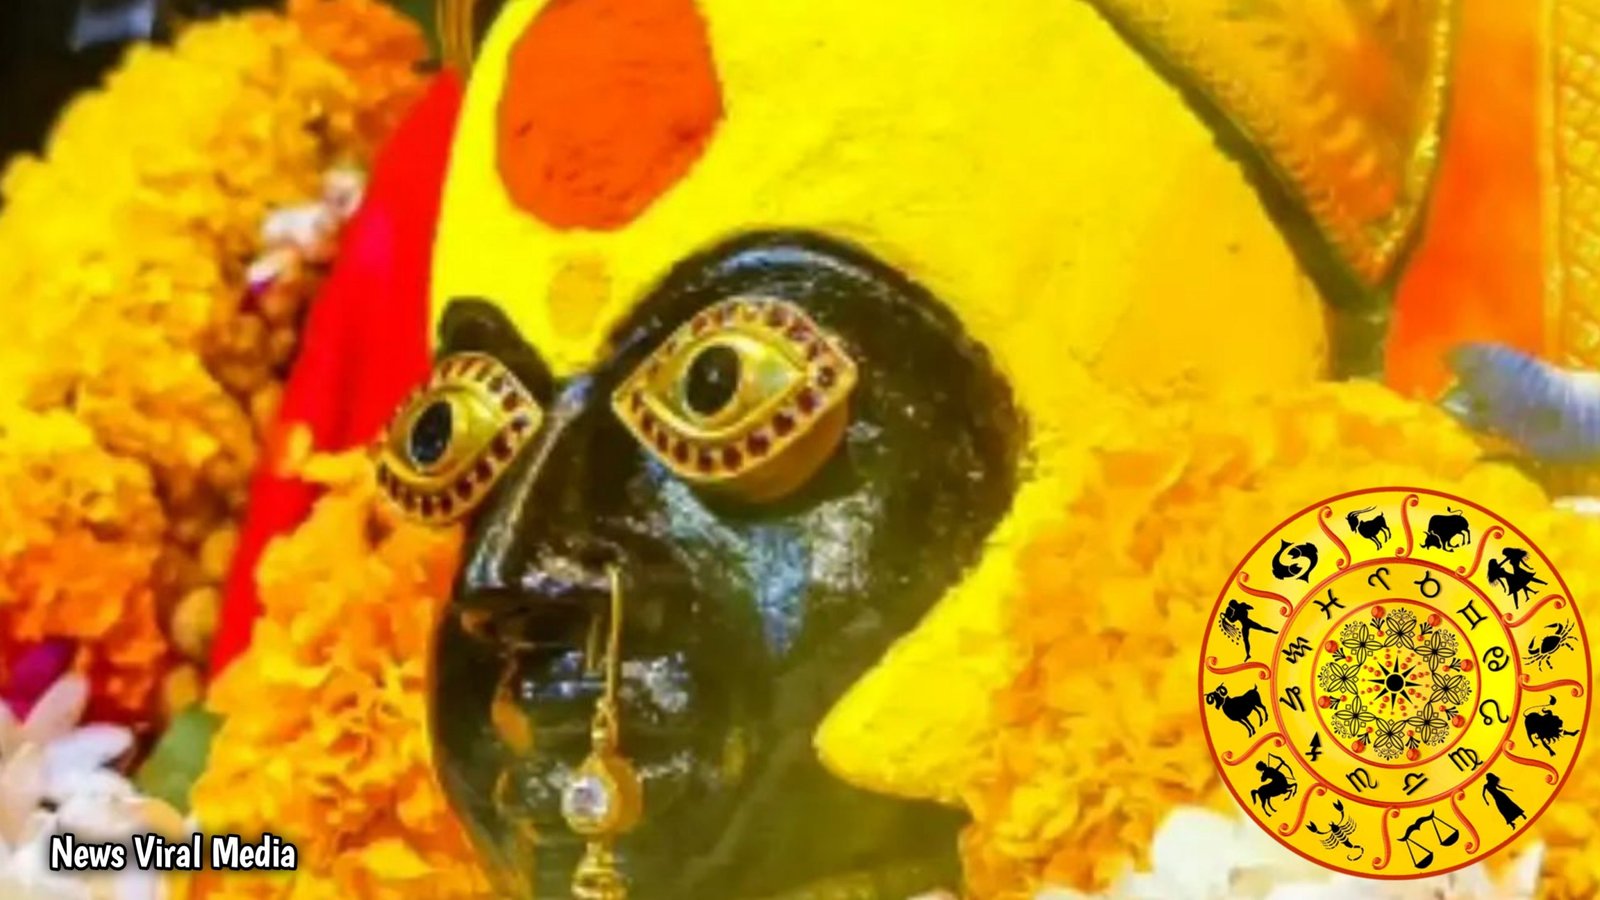 ಈ 3 ರಾಶಿಗೆ ಪ್ರತಿ ಕೆಲಸದಲ್ಲೂ ಜಯ,ಆಕಸ್ಮಿಕ ಧನಲಾಭ ಆಷಾಡ ಶುಕ್ರವಾರದ ಸಂದರ್ಭ ತುಳಜಾ ಭವಾನಿ ದೇವಿಯ ಕೃಪೆ ಸಿಗಲಿದೆ